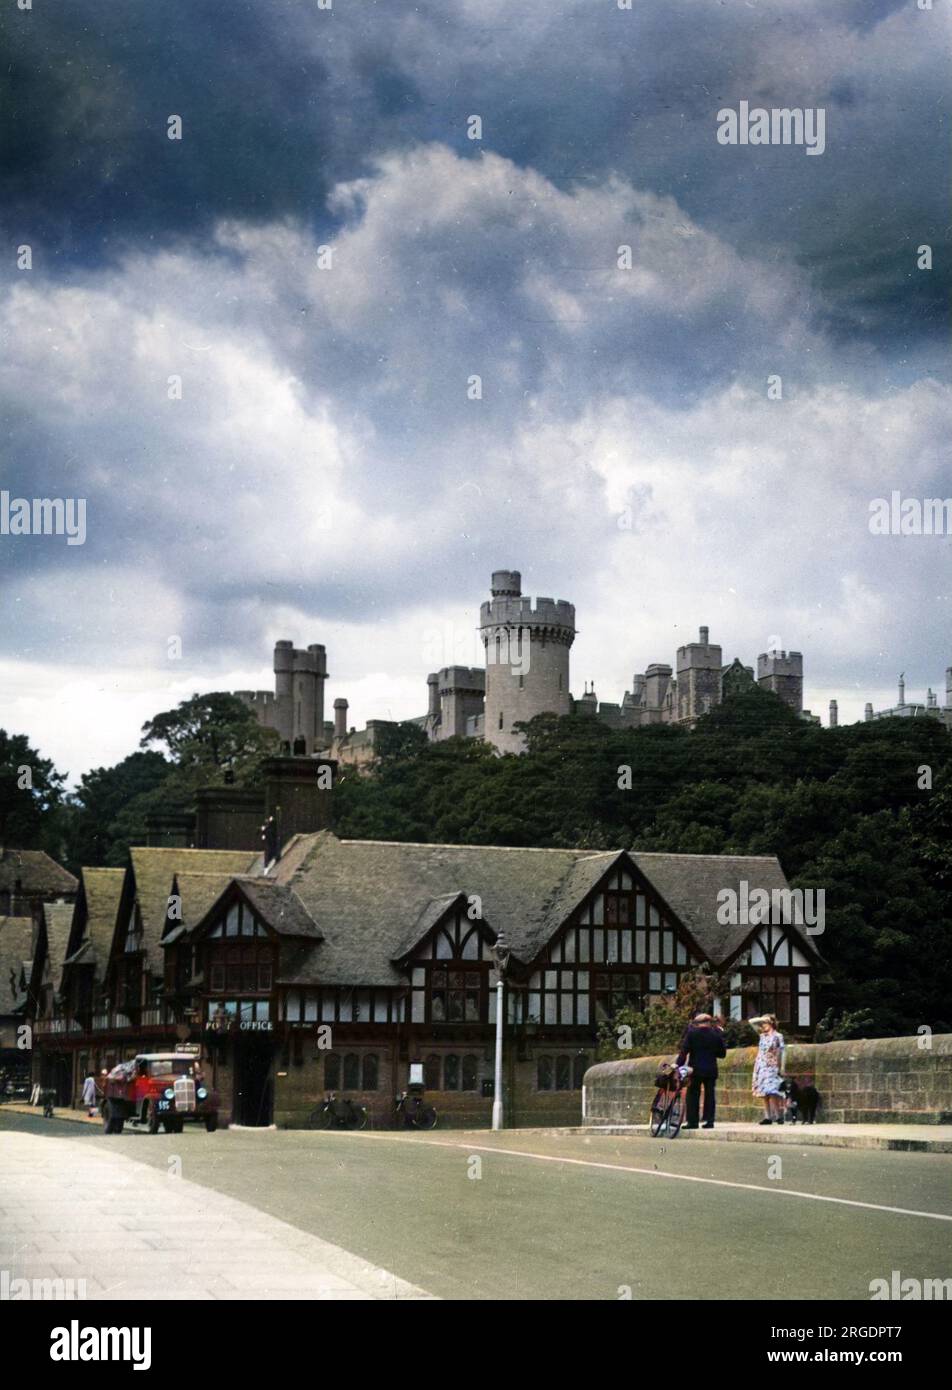 Blick auf Arundel, Sussex, England. Die riesigen Mauern der Burg aus dem 11. Jahrhundert - Sitz des Herzogs von Norfolk, erheben sich über der Stadt. Stockfoto